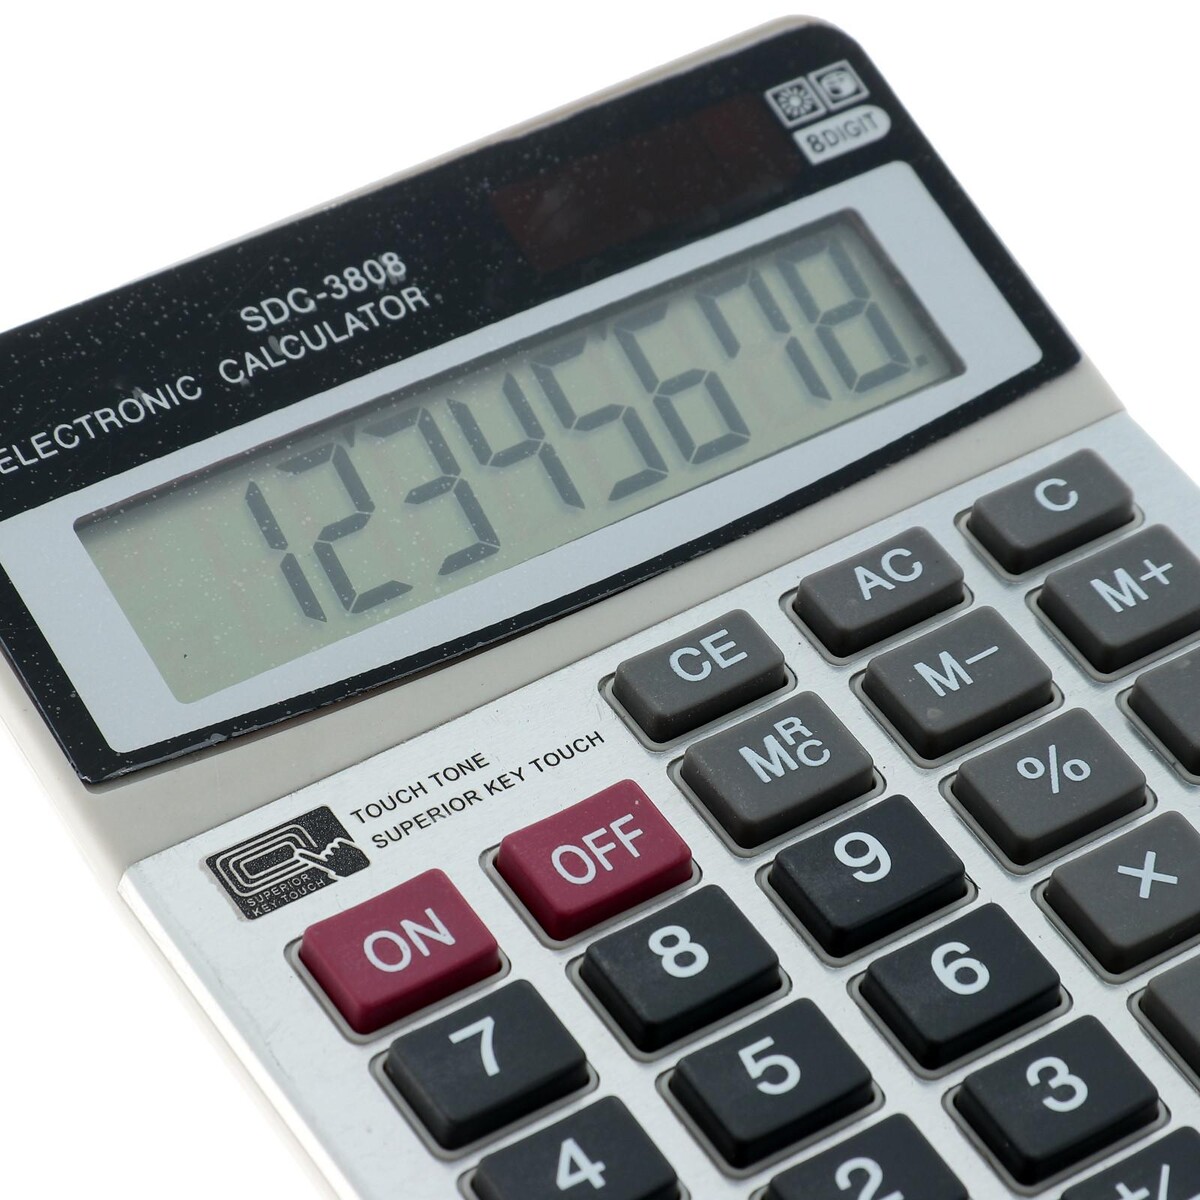 Калькулятор. Калькулятор SDC 3808. Калькулятор Electronic calculator SDC 3808. Калькулятор SDC-800 (8 разрядный). SDC-3808 калькулятор настольный.